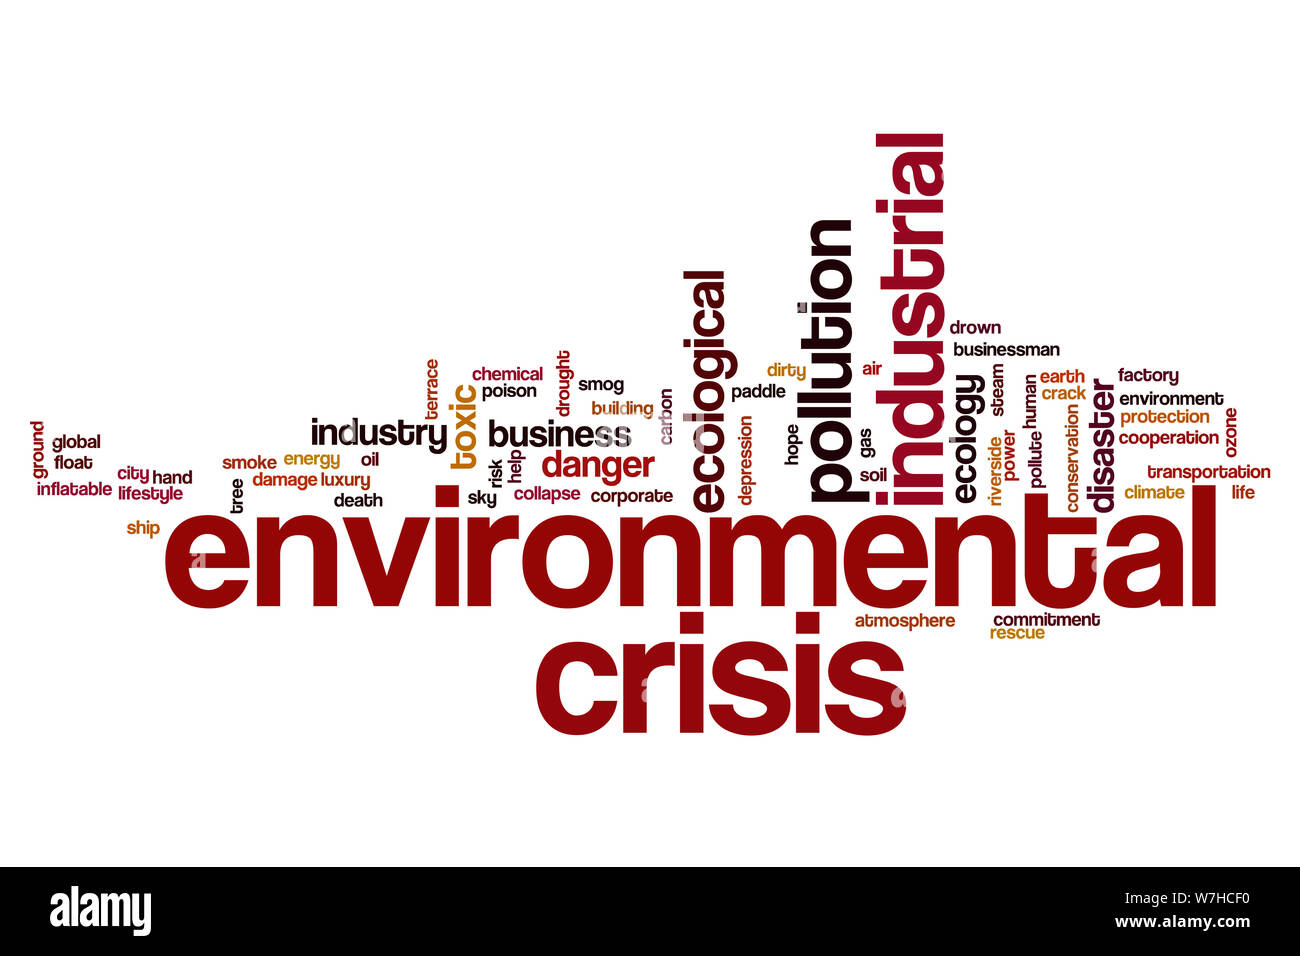 Environmental crisis word cloud concept Stock Photo